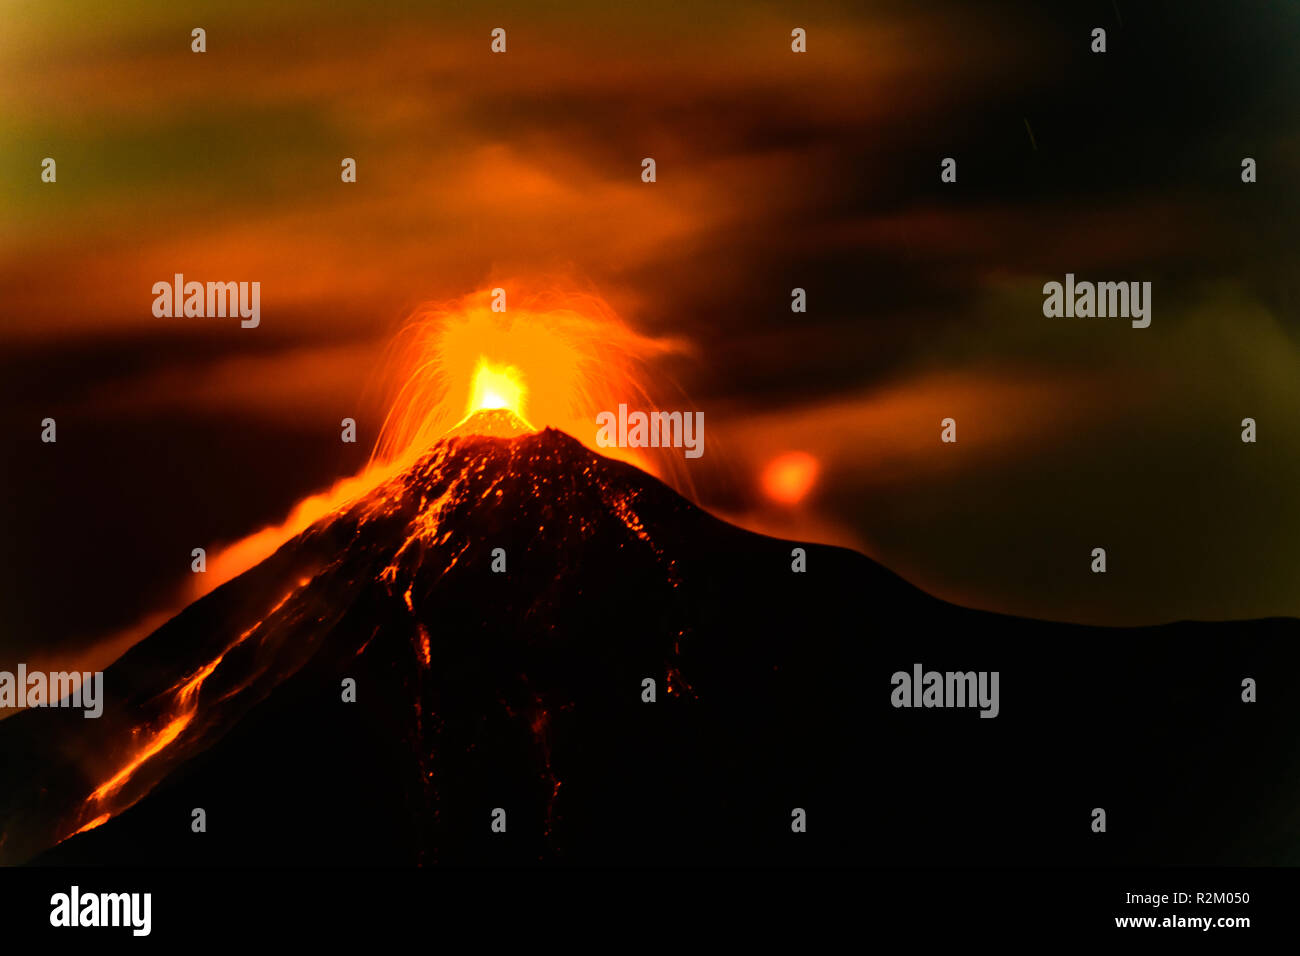 Fuego Vulkan ausbricht am 18. November 2018 in der Nähe von Antigua, Guatemala, Mittelamerika. Verschlusszeit verwischt Lava & Rauch Bewegung. Stockfoto